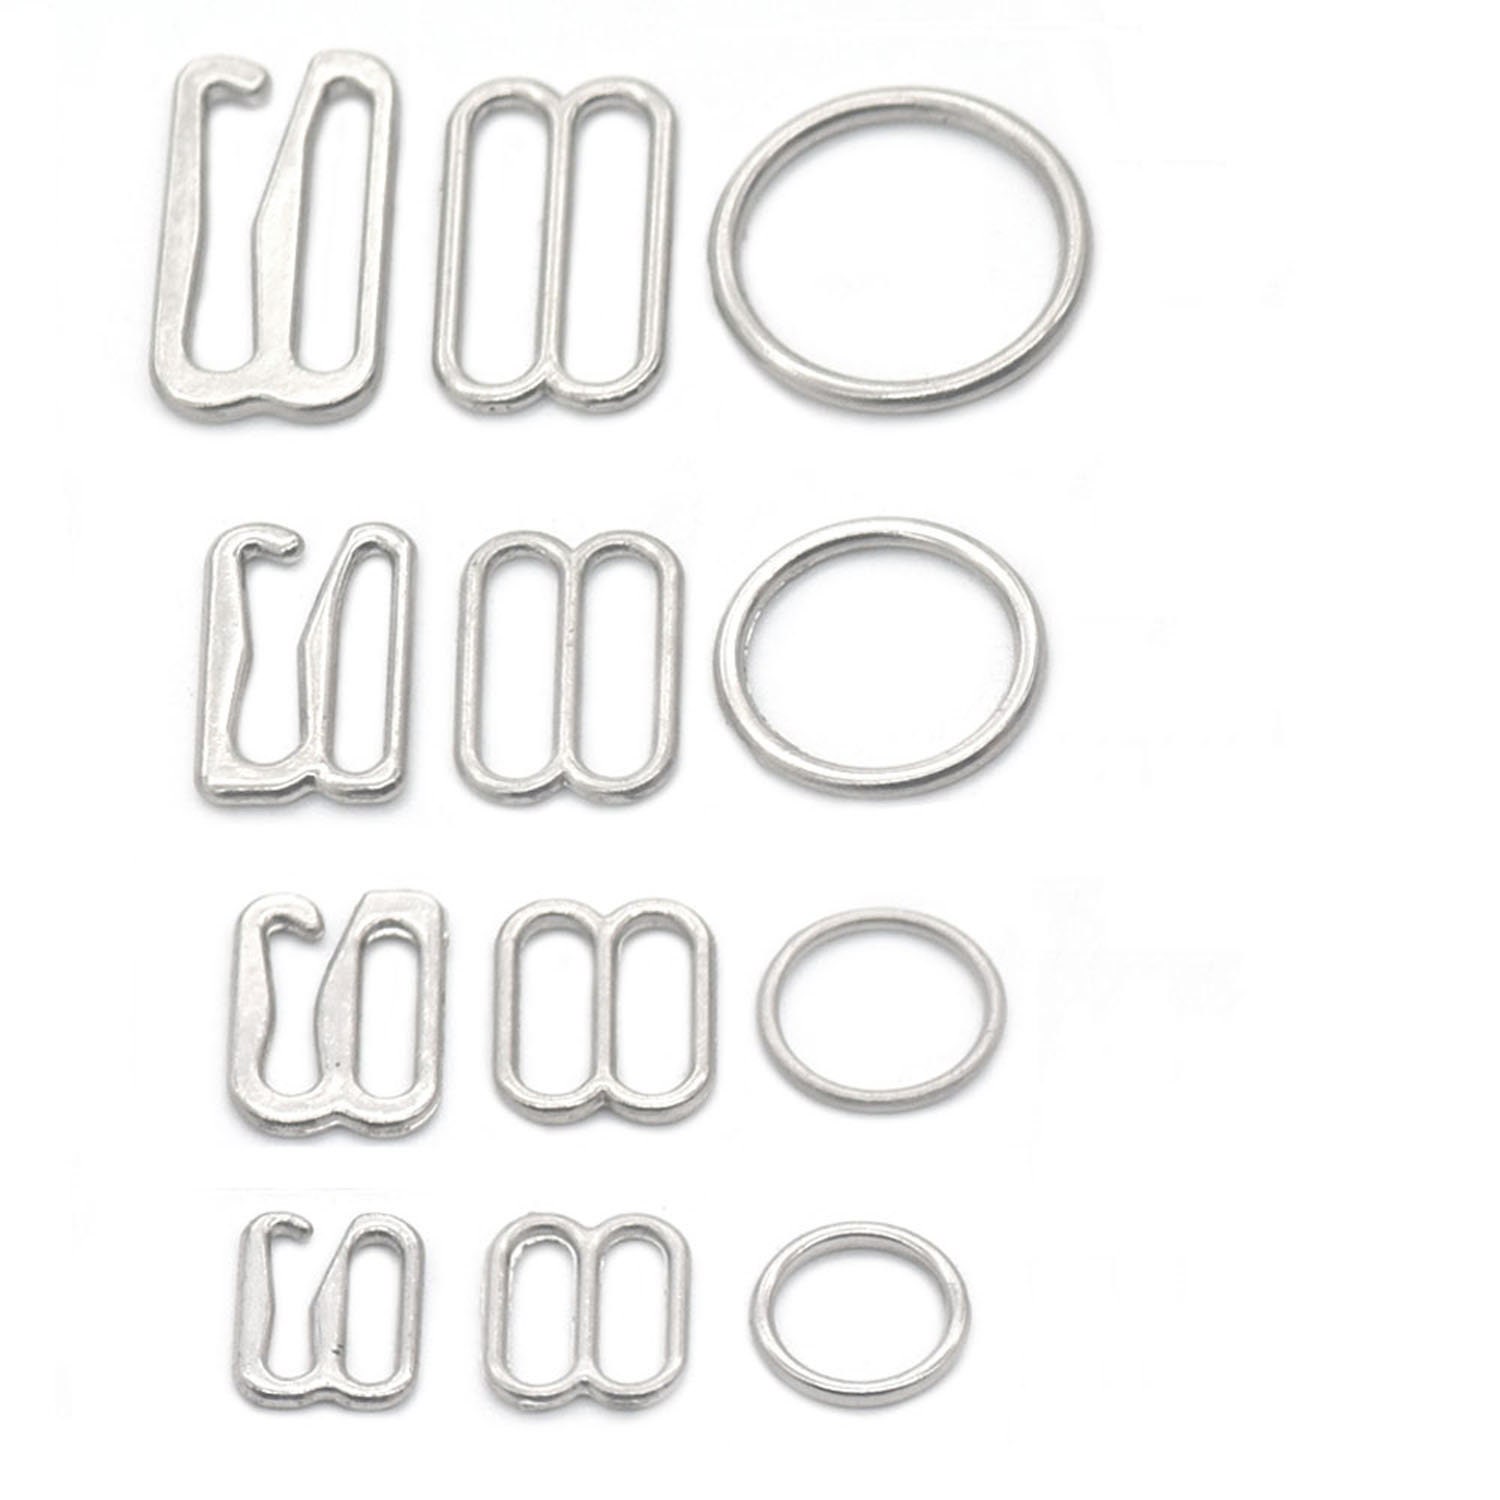 Metal Bra Strap Adjuster Slider/ Hook /O Ring Lingerie Sewing Craft 6mm~25mm